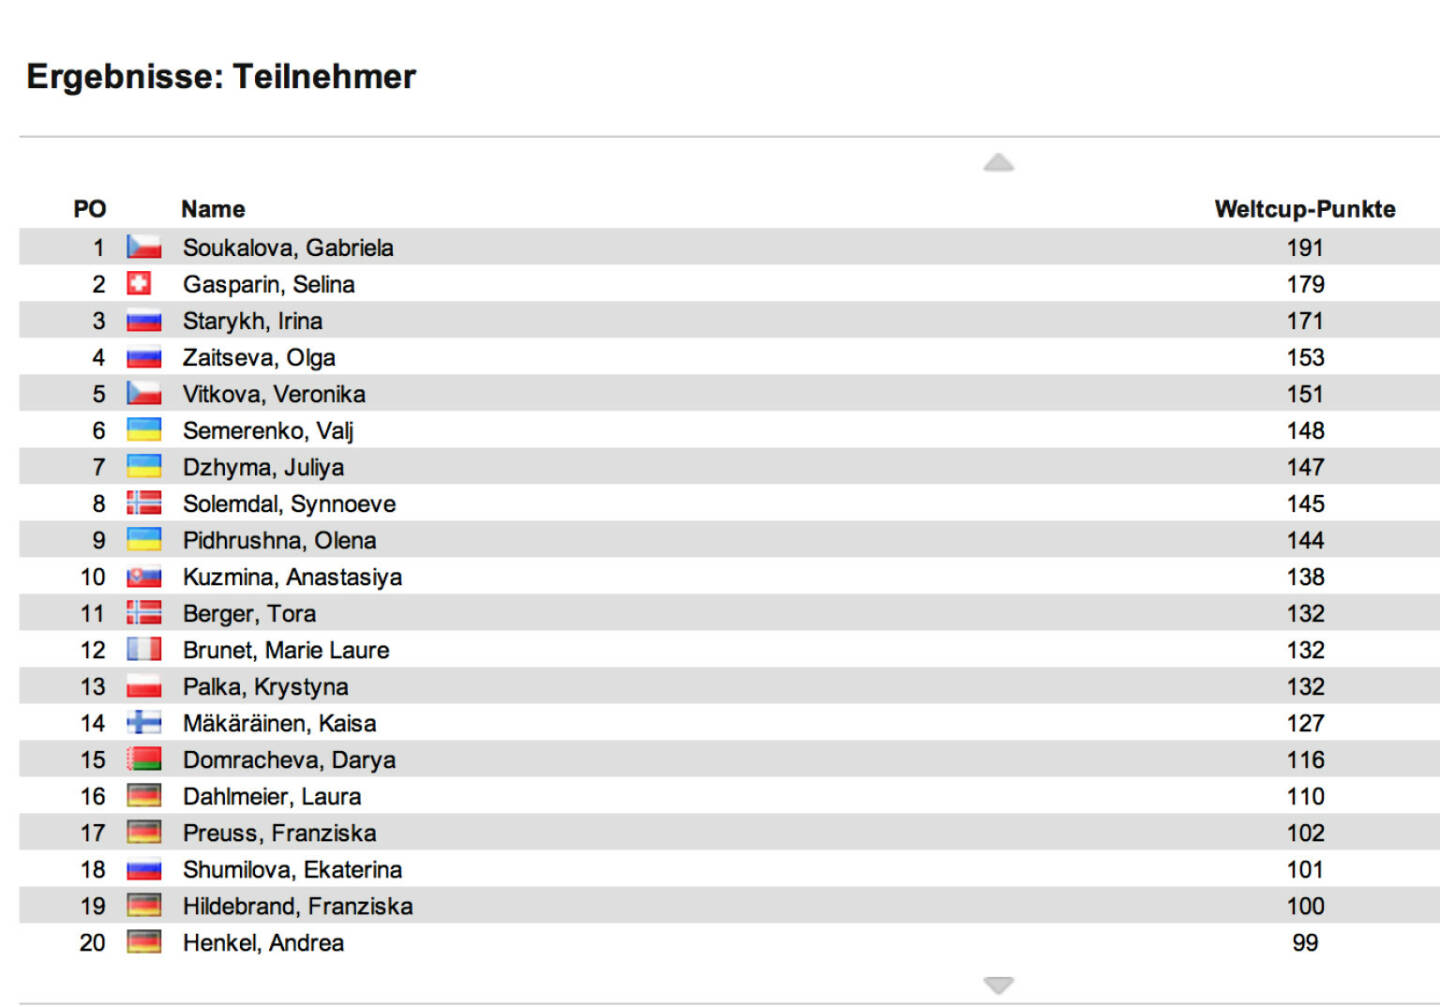 Biathlon-Weltcupstand Damen nach 4 Rennen: Auch in Le Grand-Bornard (Sprint) siegte Selina Gasparin, 2. wurde Kaisa Mäkäräinen, 3. Vali Semerenko, die Österreicherin Lisa Theresa Hauser holte als 33. ihre ersten Weltcuppunkte. Im Weltcup bleibt Gabriela Soukalova (siehe http://www.christian-drastil.com/2012/12/15/biathlon-siegerin-singt-simon-and-garfunkel-klassiker ) in Front, 2. ist jetzt Gasparin, 3. die unglaublich konstante Irina Staryk